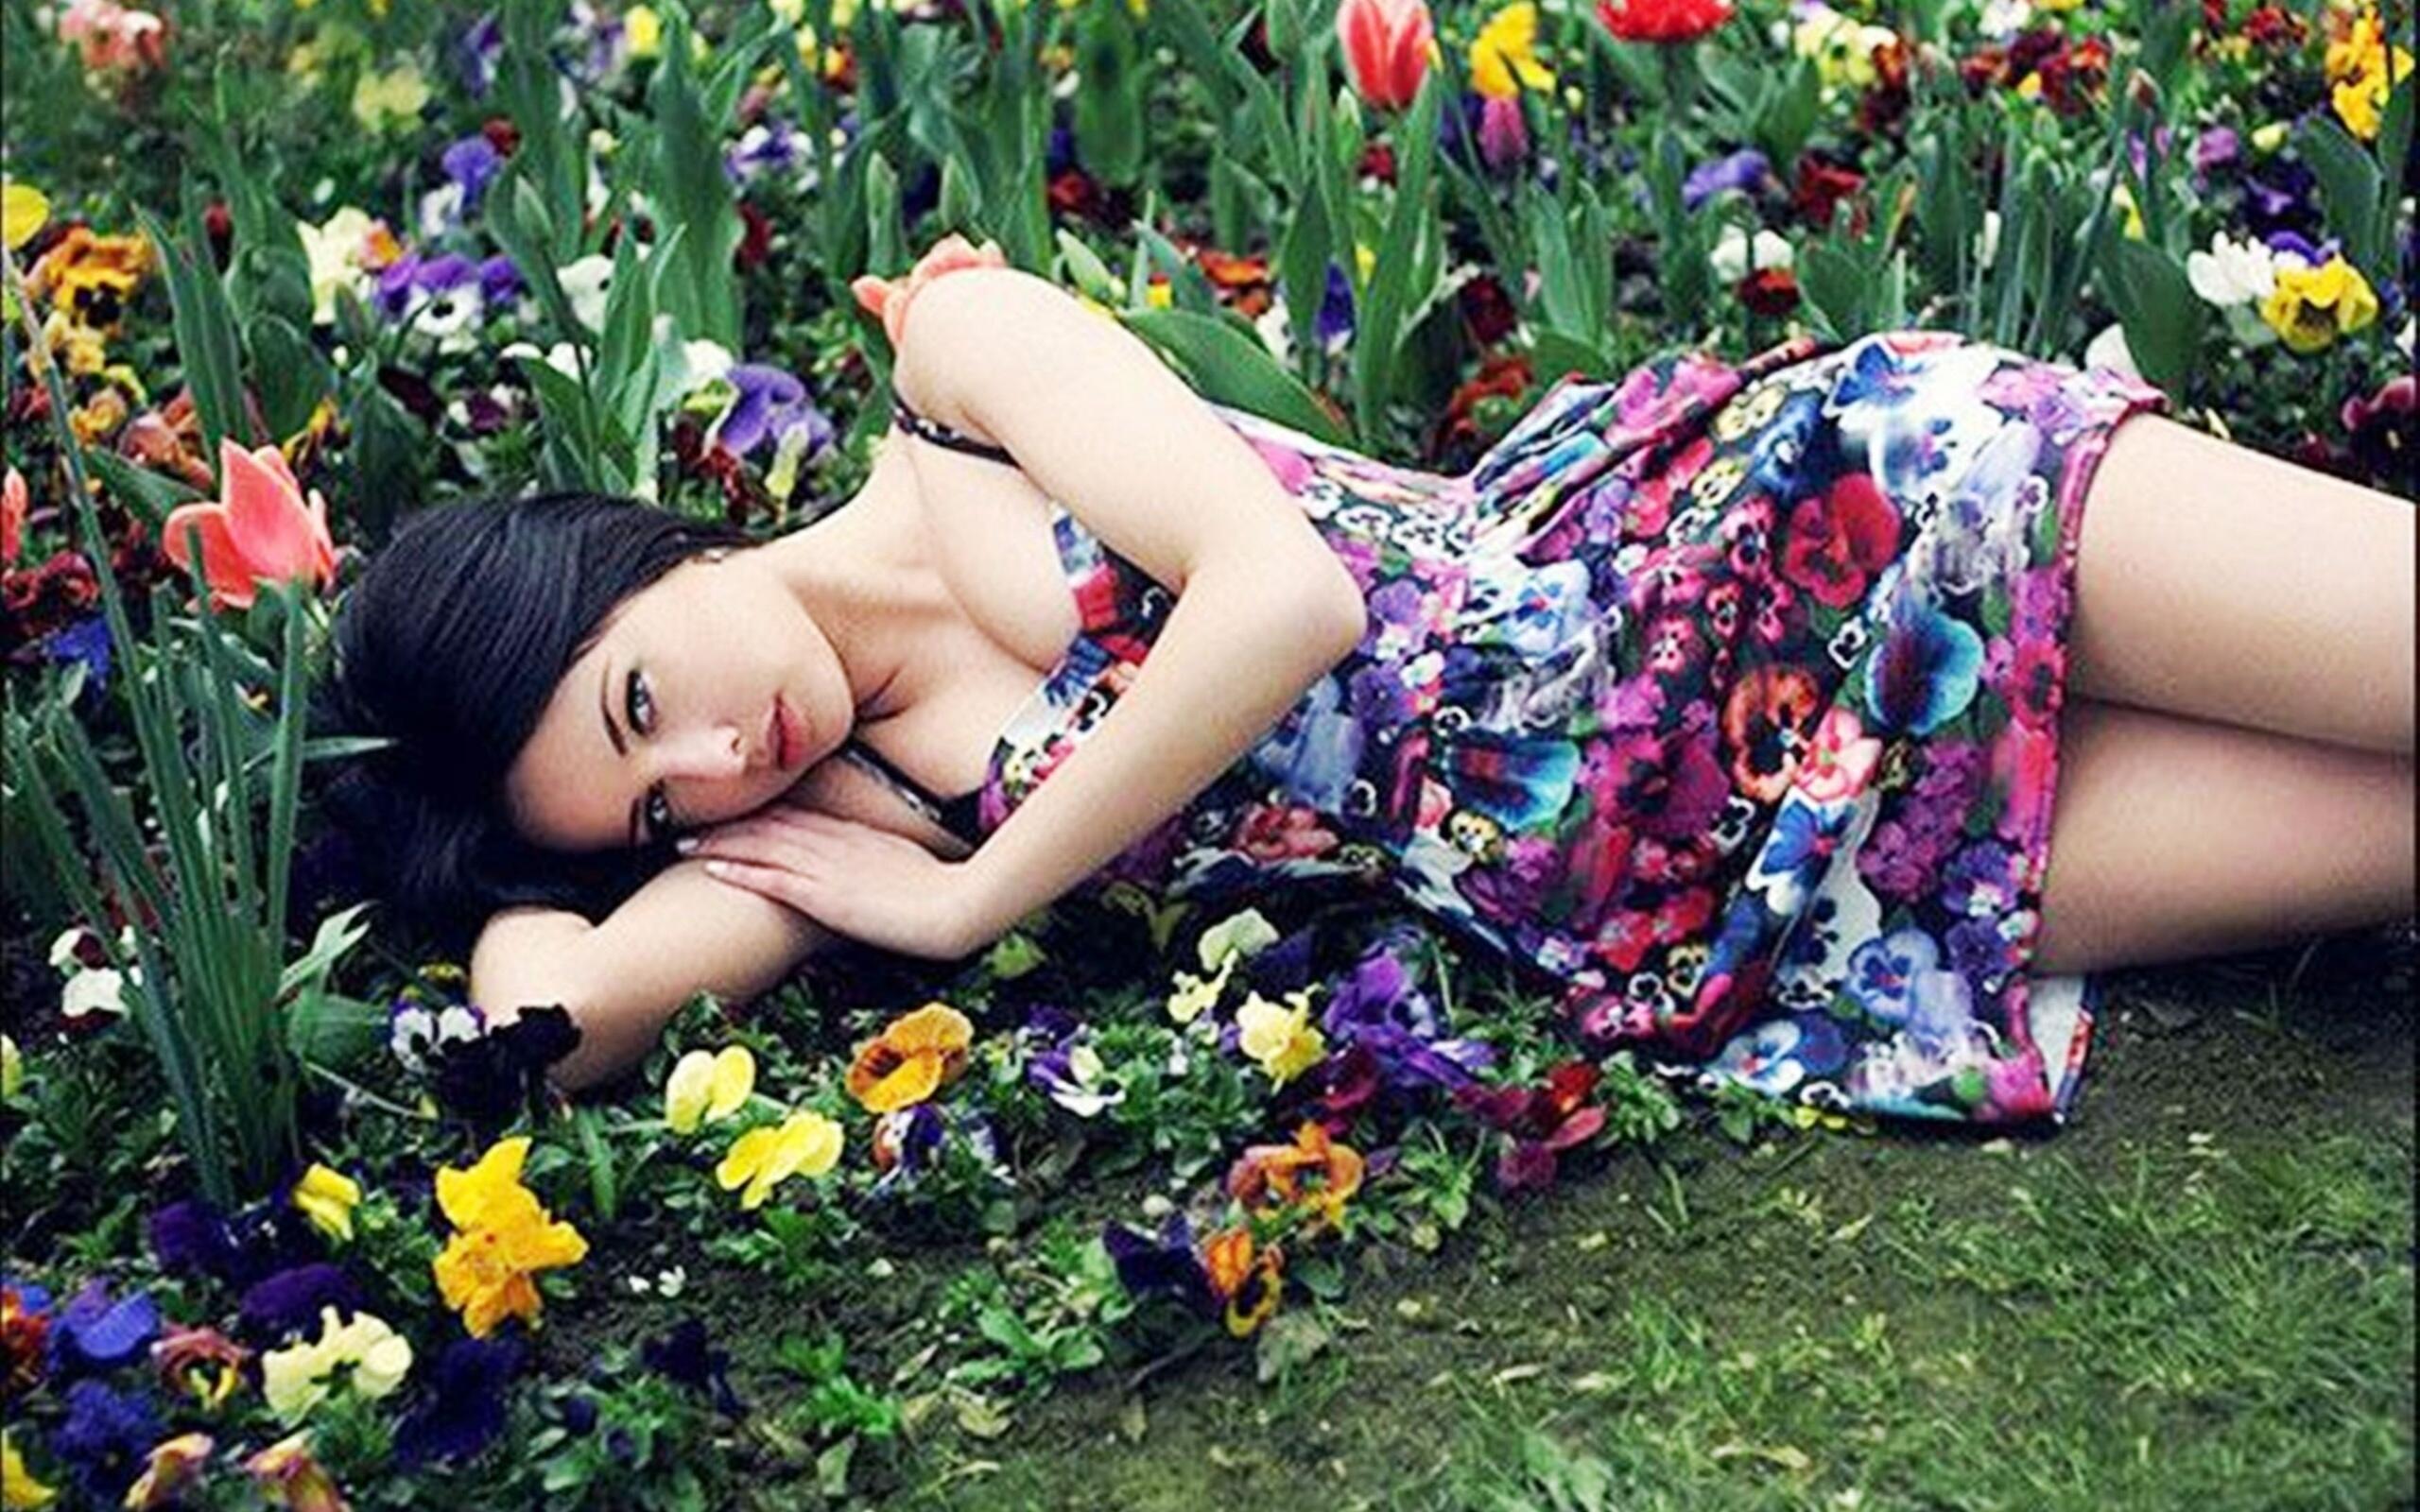 Фото девушки с силиконовой грудью на фоне цветочной клумбы